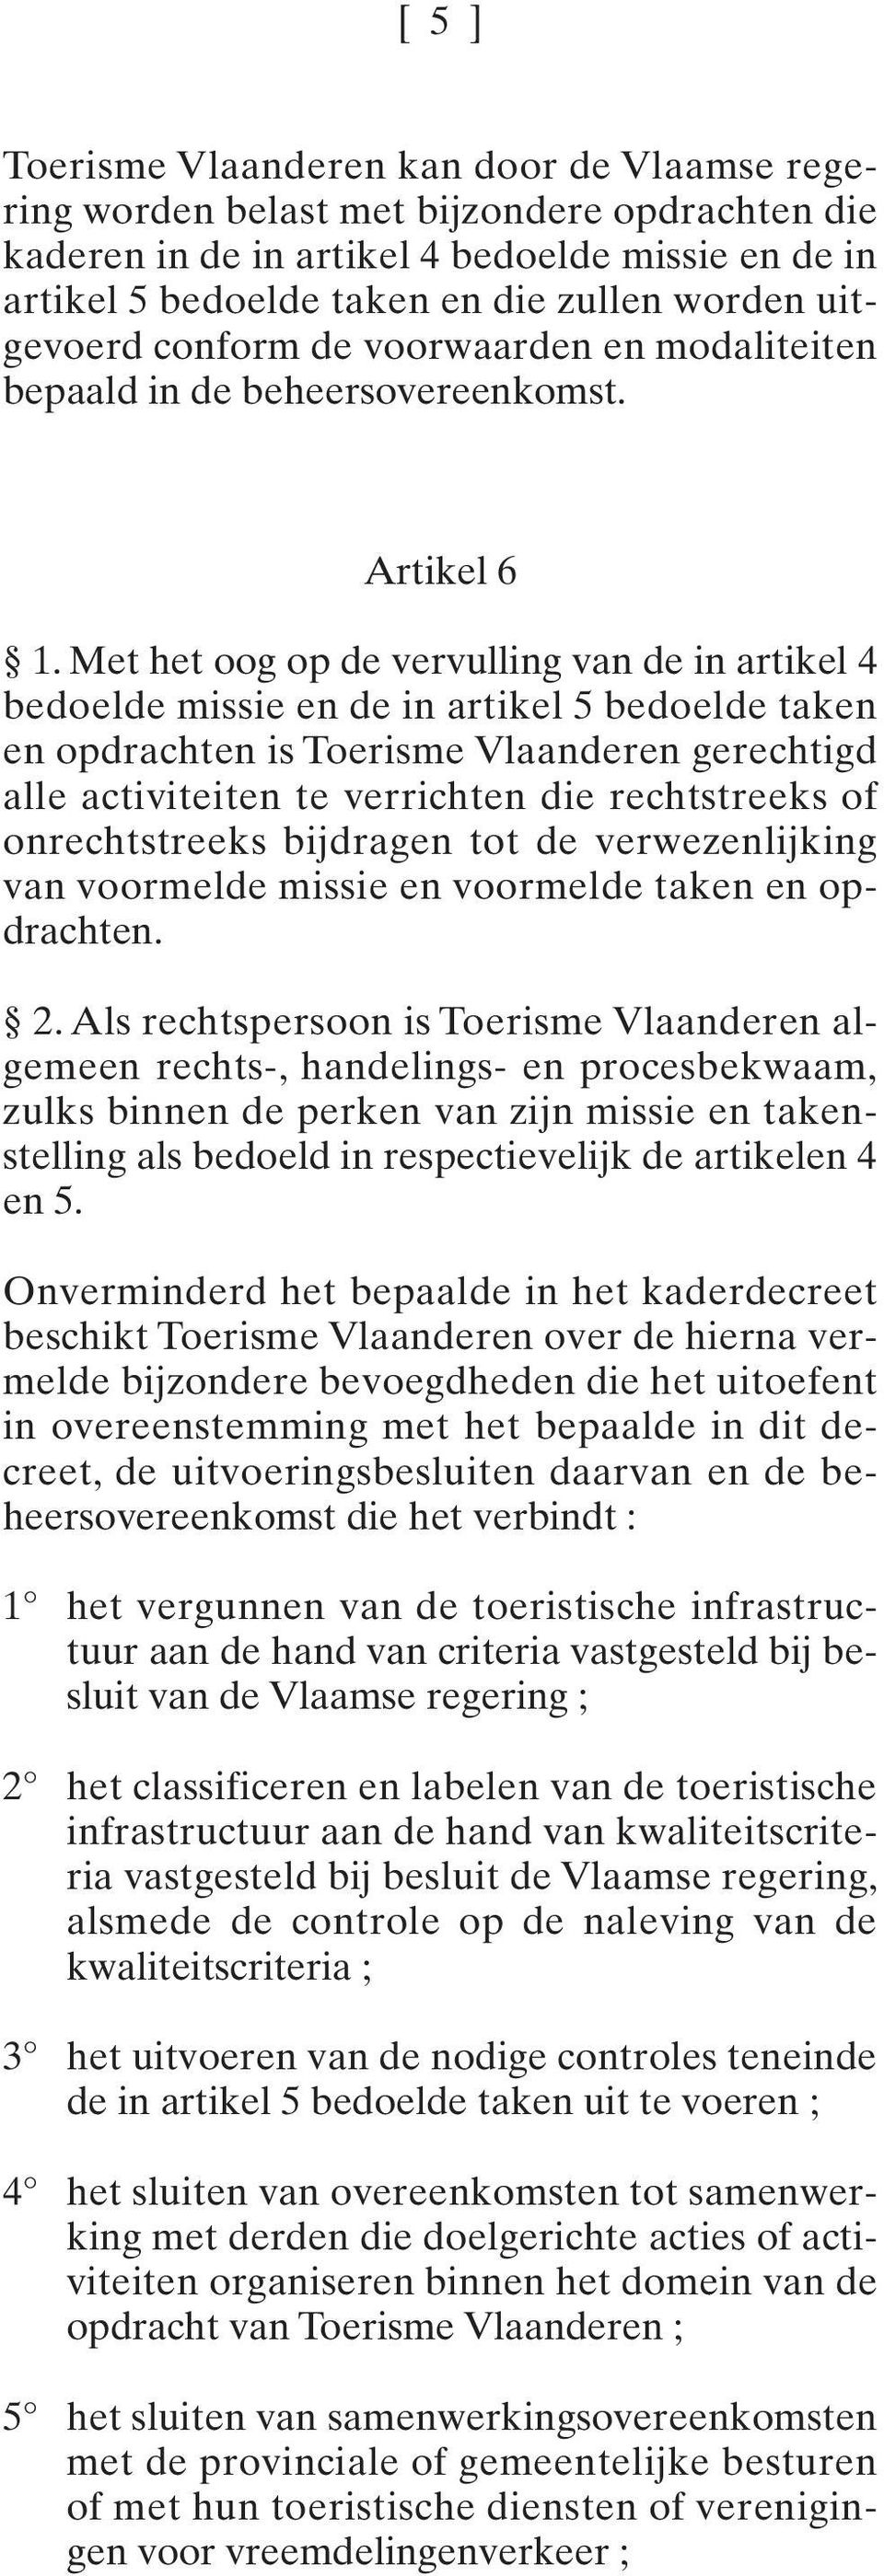 Met het oog op de vervulling van de in artikel 4 bedoelde missie en de in artikel 5 bedoelde taken en opdrachten is Toerisme Vlaanderen gerechtigd alle activiteiten te verrichten die rechtstreeks of